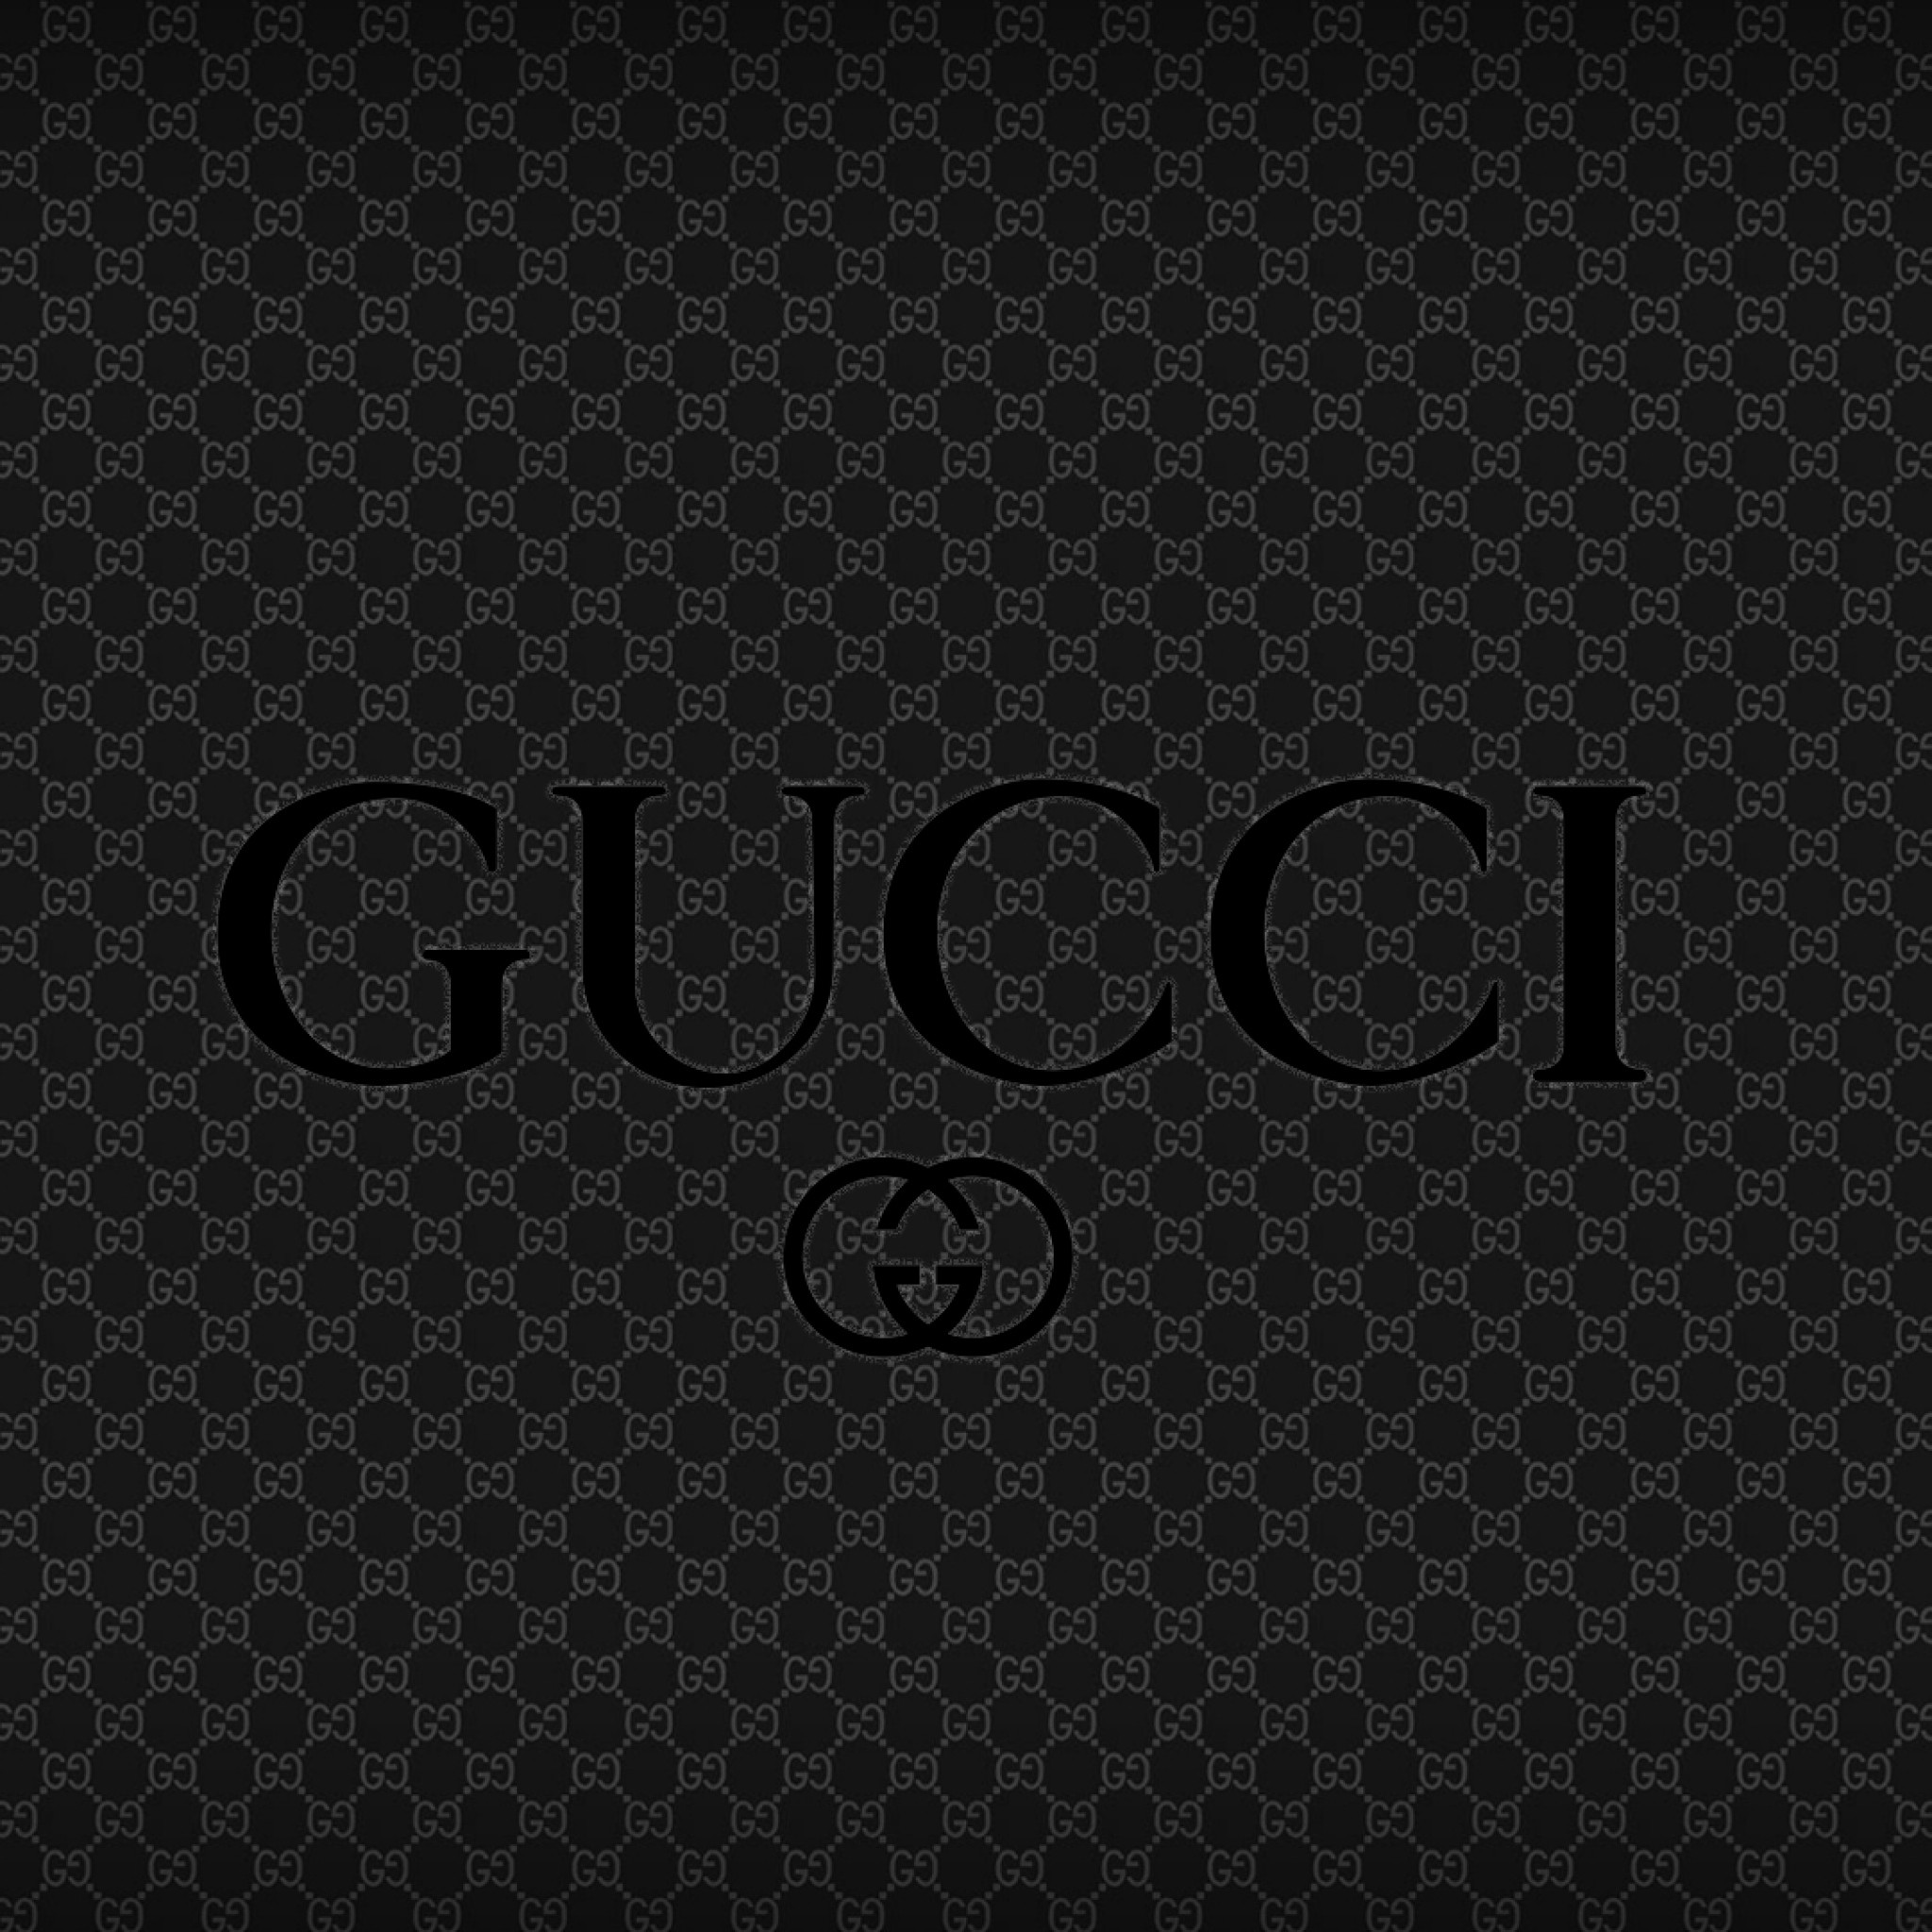 Gucci ブランドロゴのipad壁紙 Ipad タブレット壁紙ギャラリー